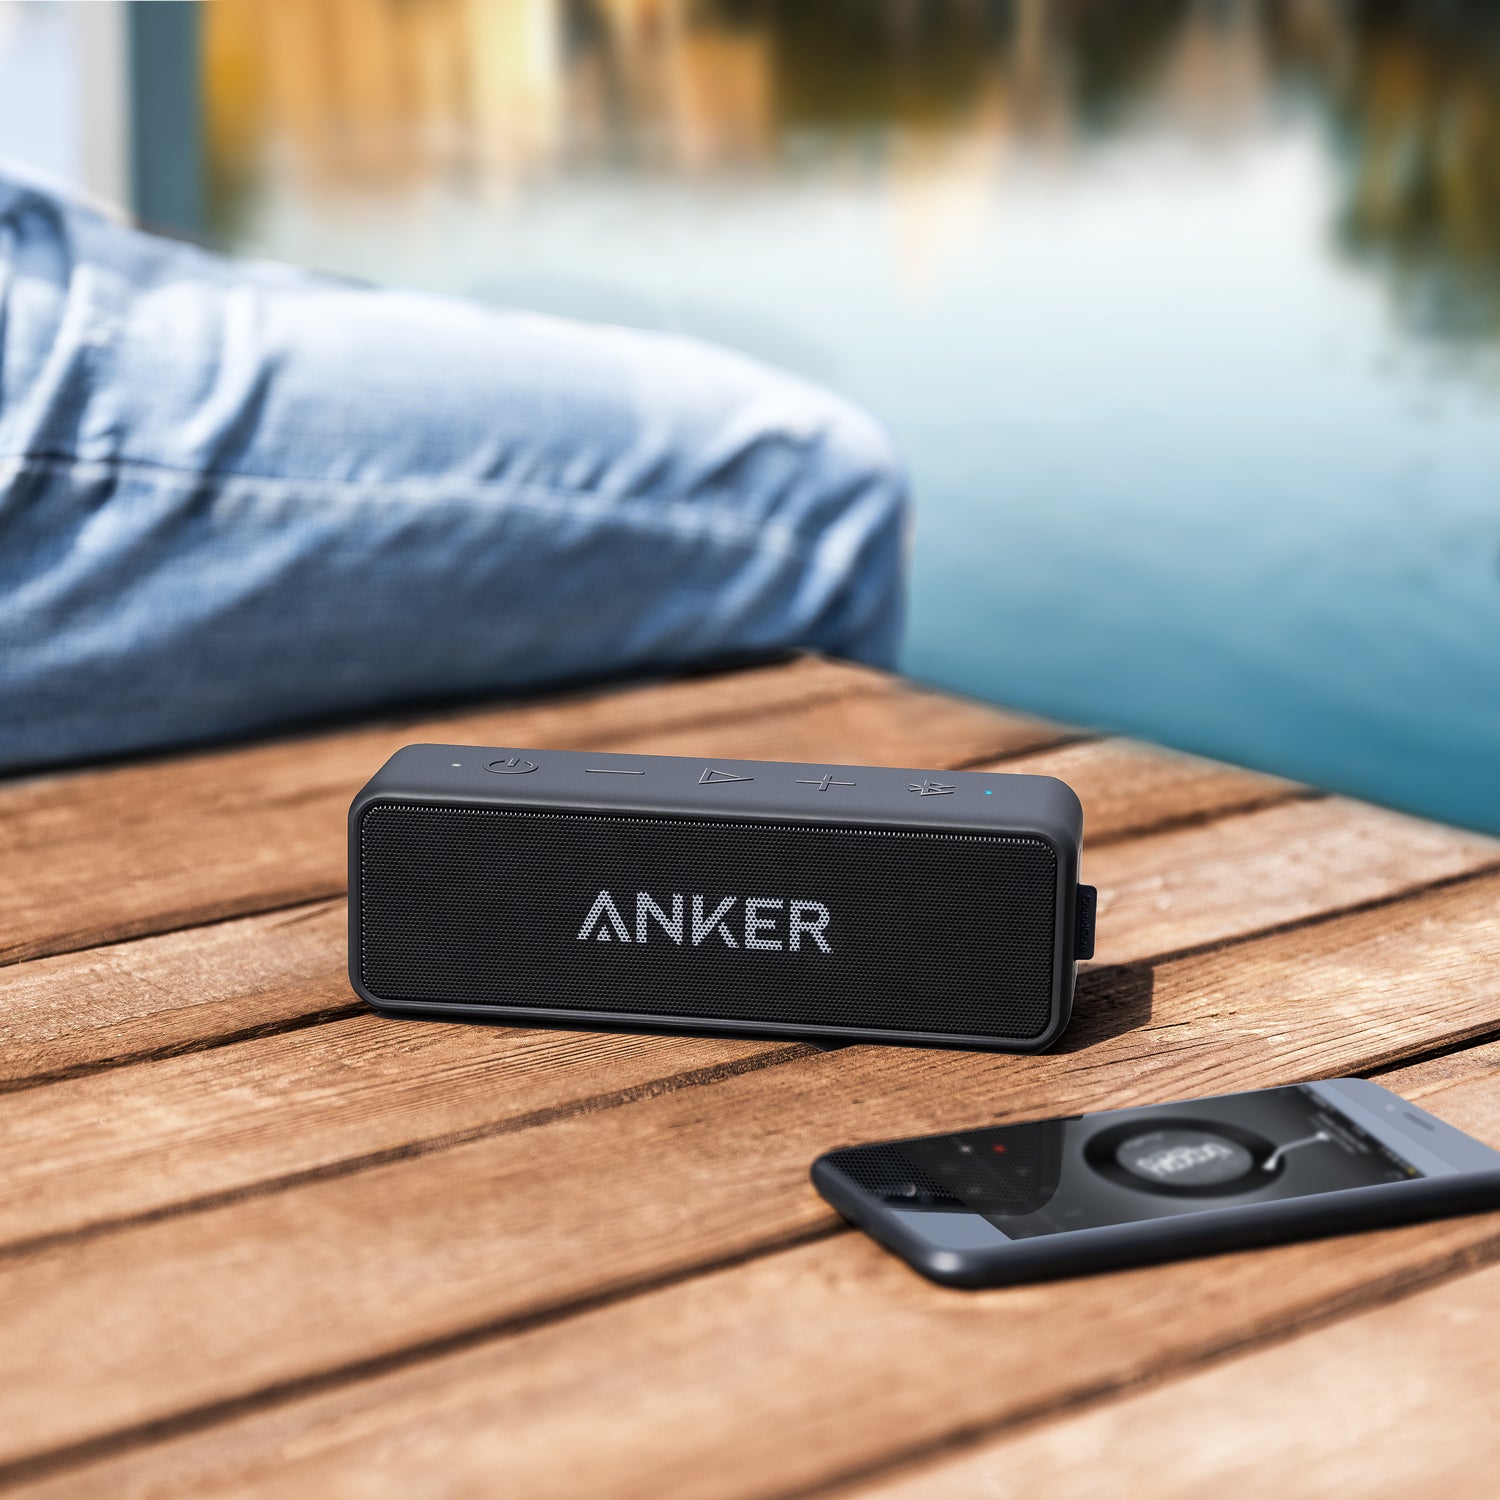 Anker SoundCore 2 Bluetooth Hoparlör Siyah